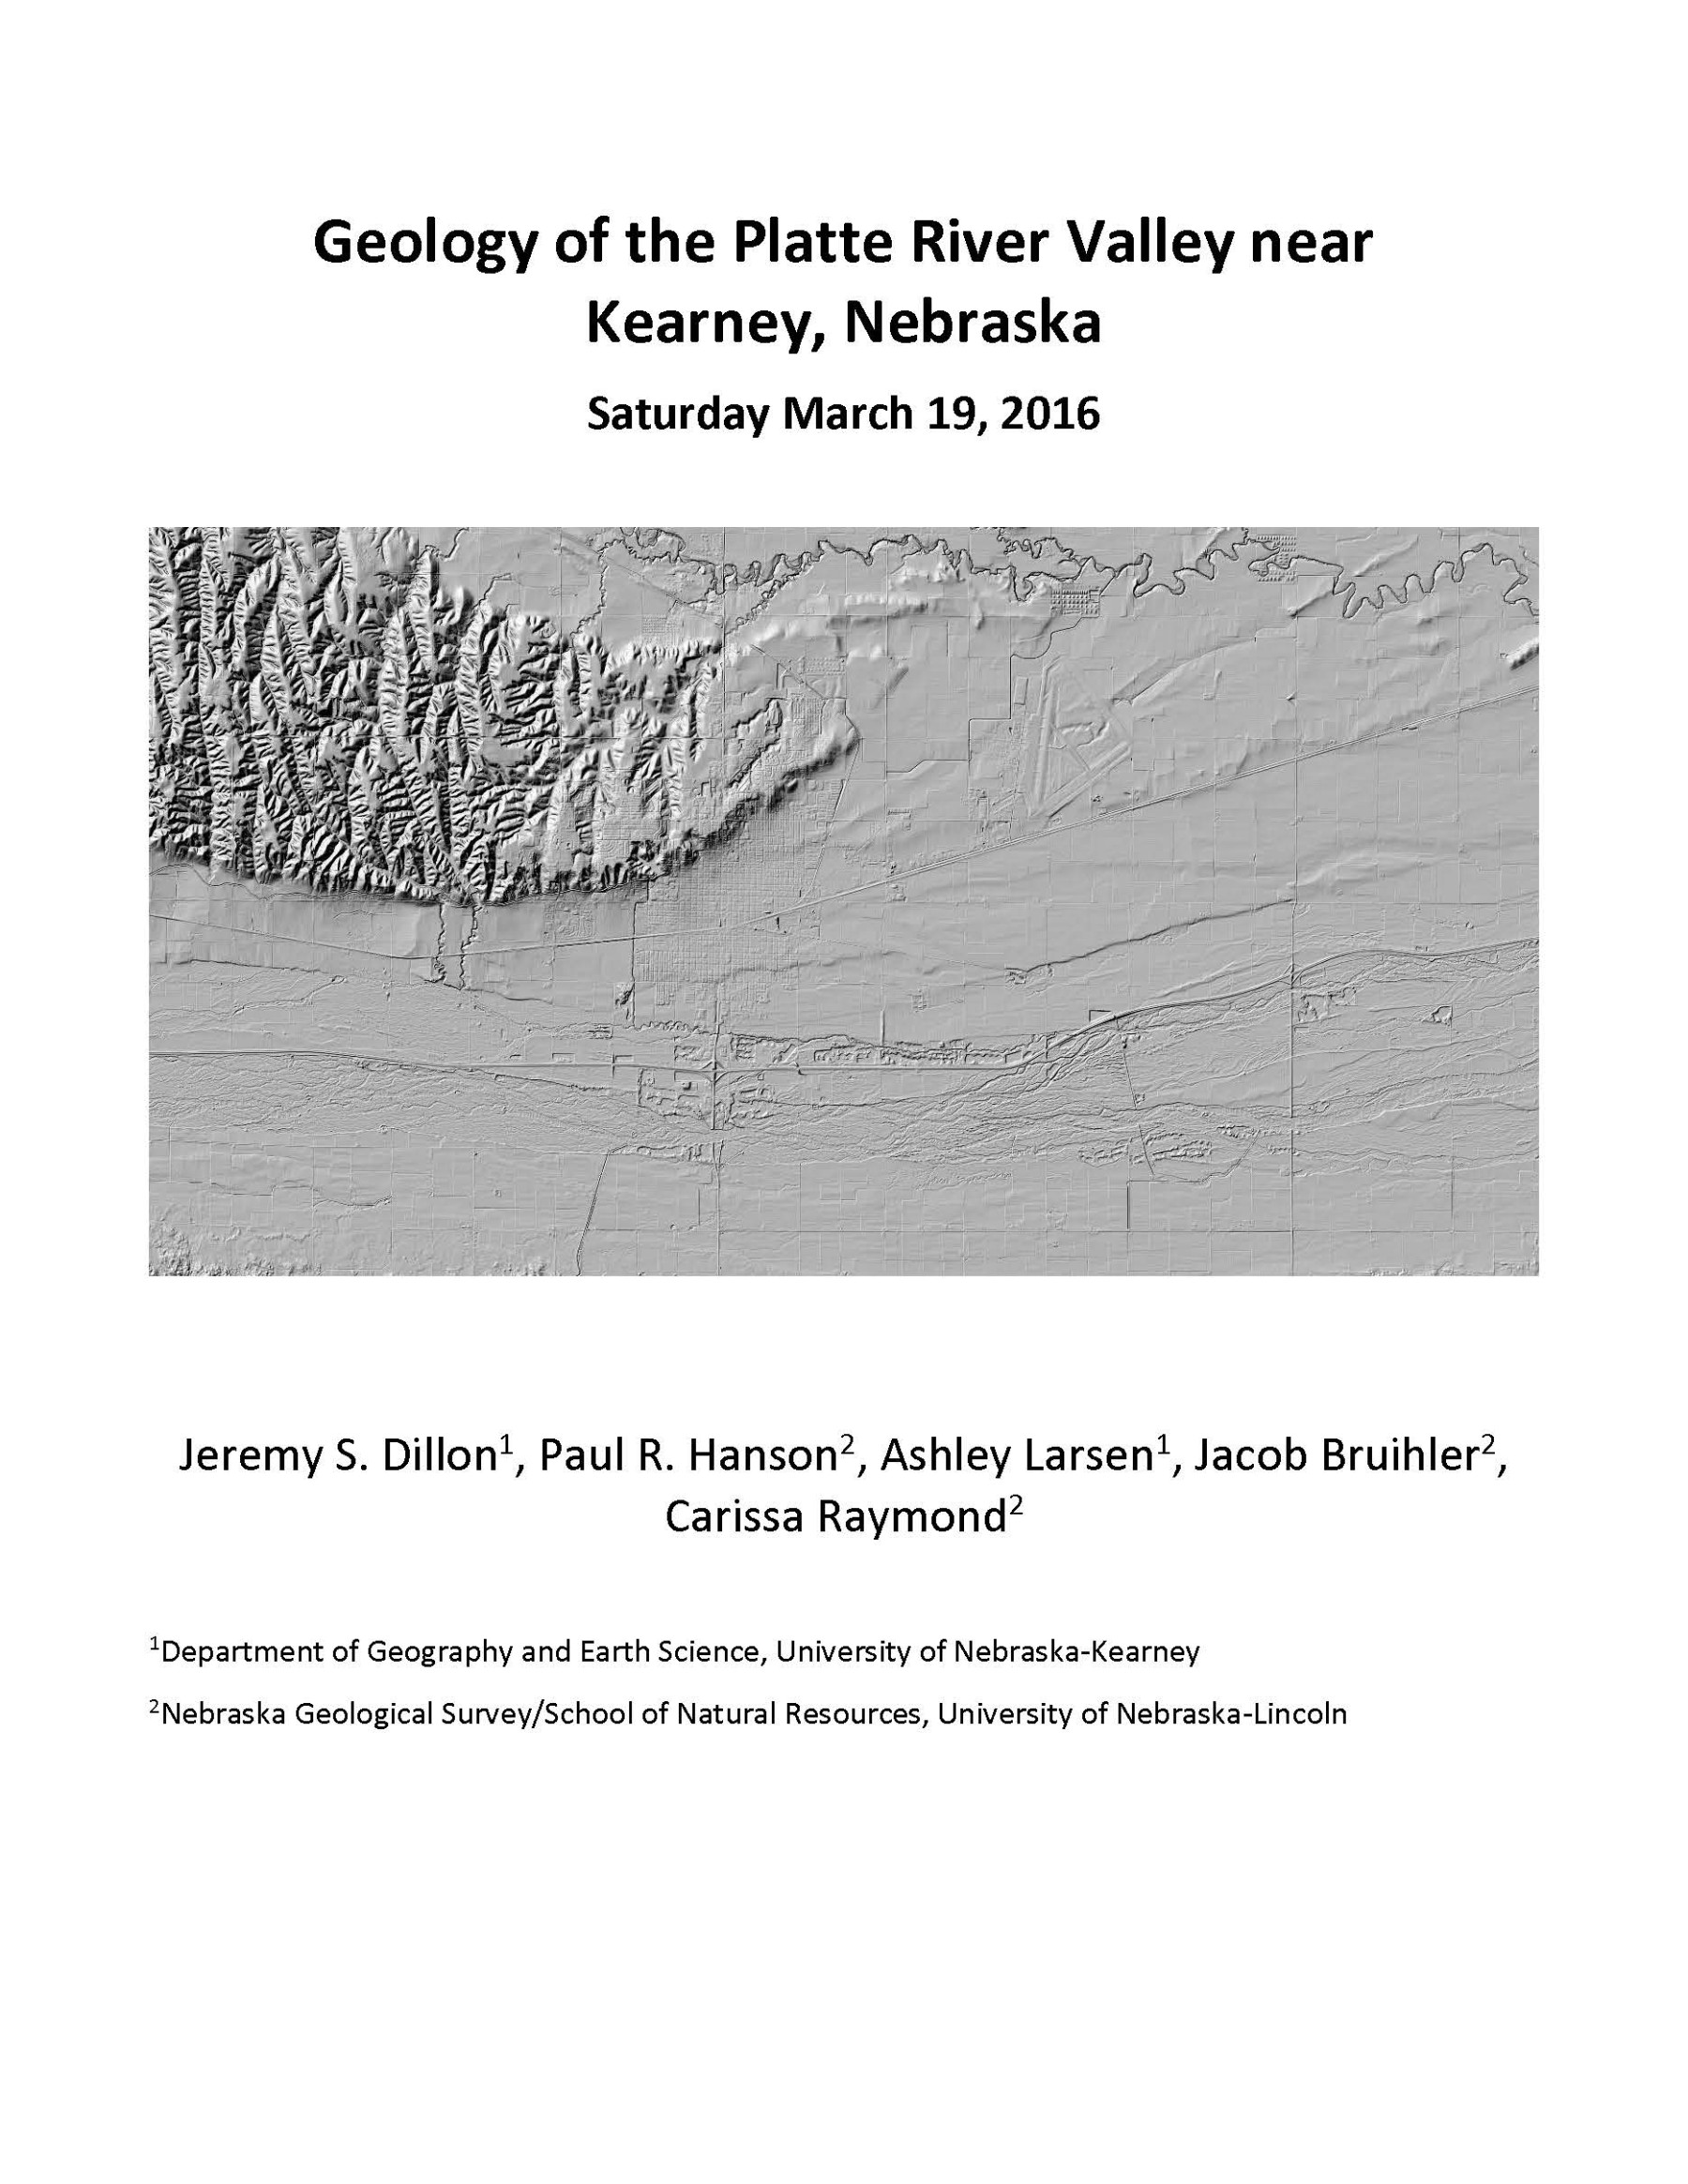 Geology of the Platte River Valley near Kearney, Nebraska (GB-20)